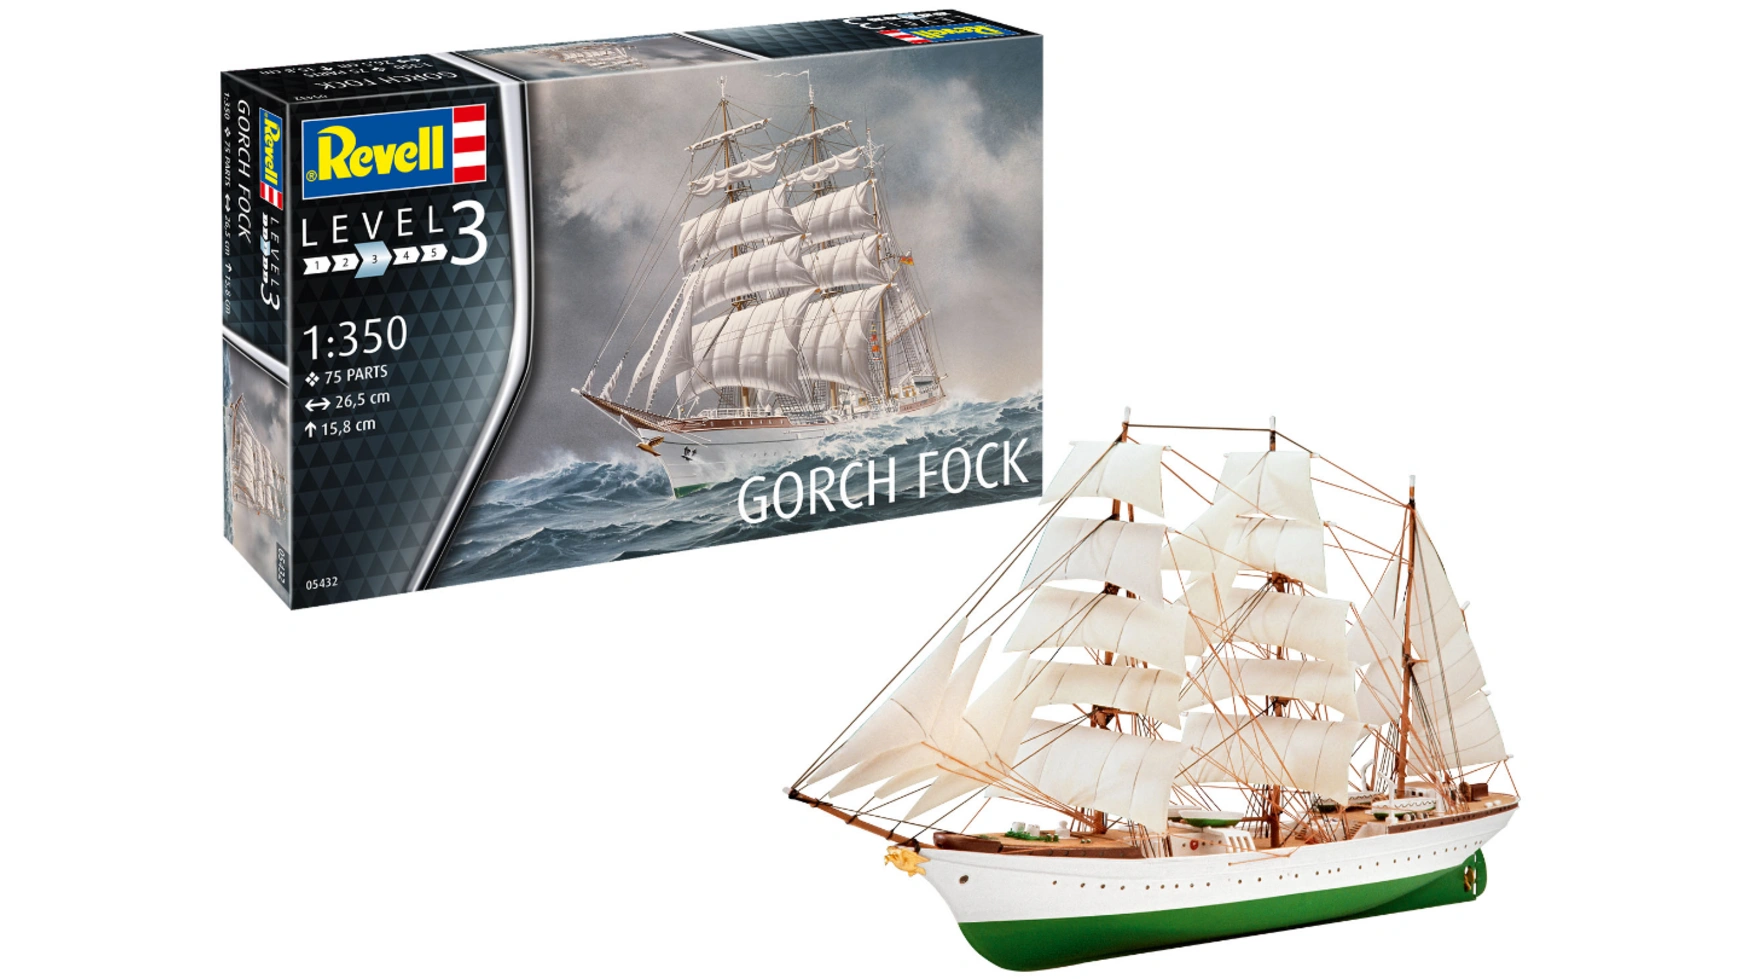 Revell Горч Фок корабль моделист трехмачтовый барк горх фок 1 350 135037